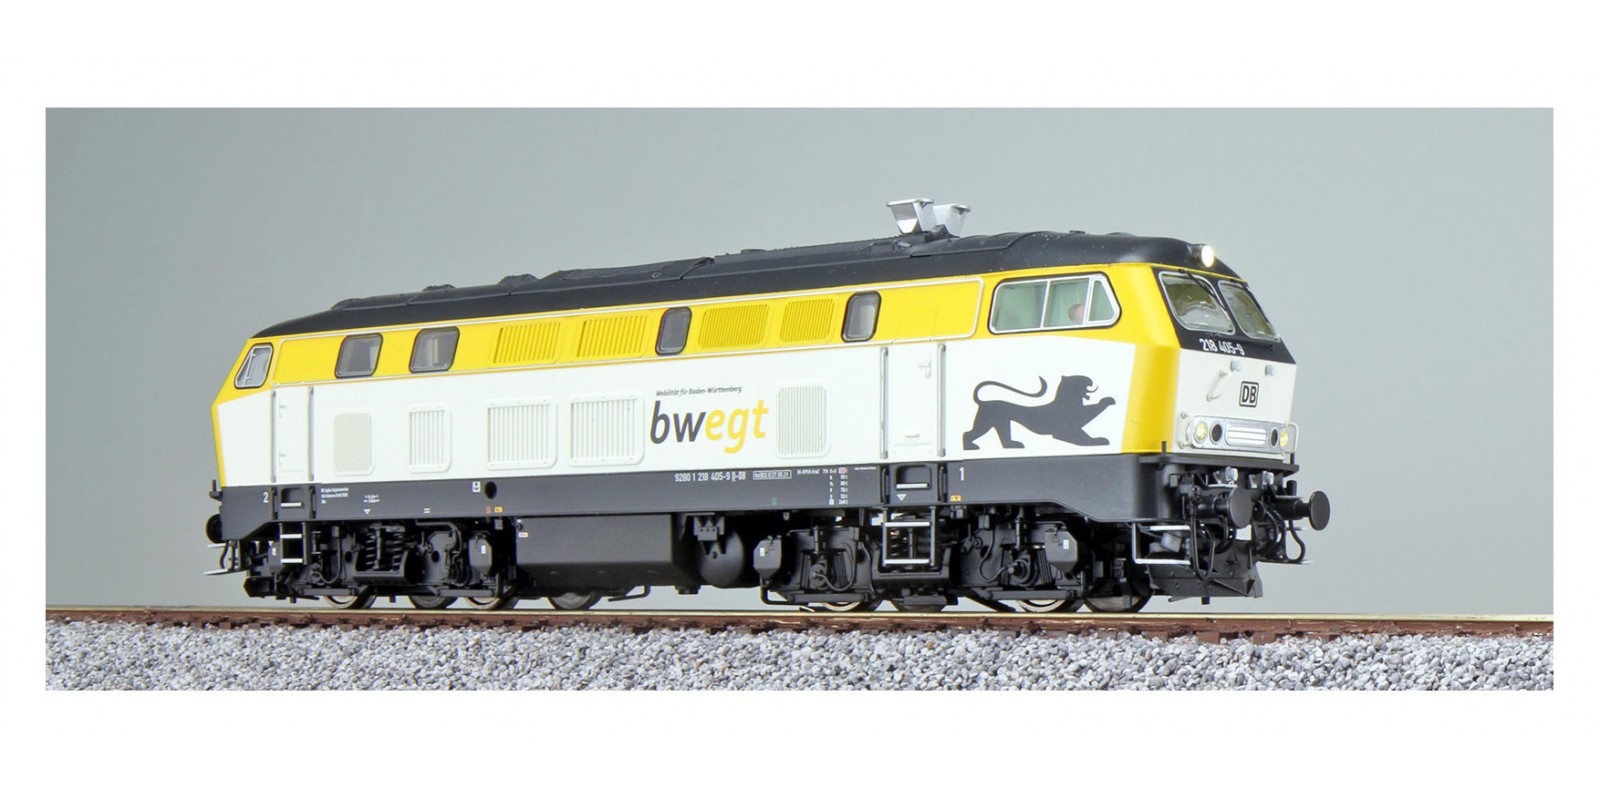 ES31016 Diesel locomotive, H0, BR 218, 218 405 Bwegt, white/grey, Ep VI, original condition around 2021, sound+smoke, DC/AC